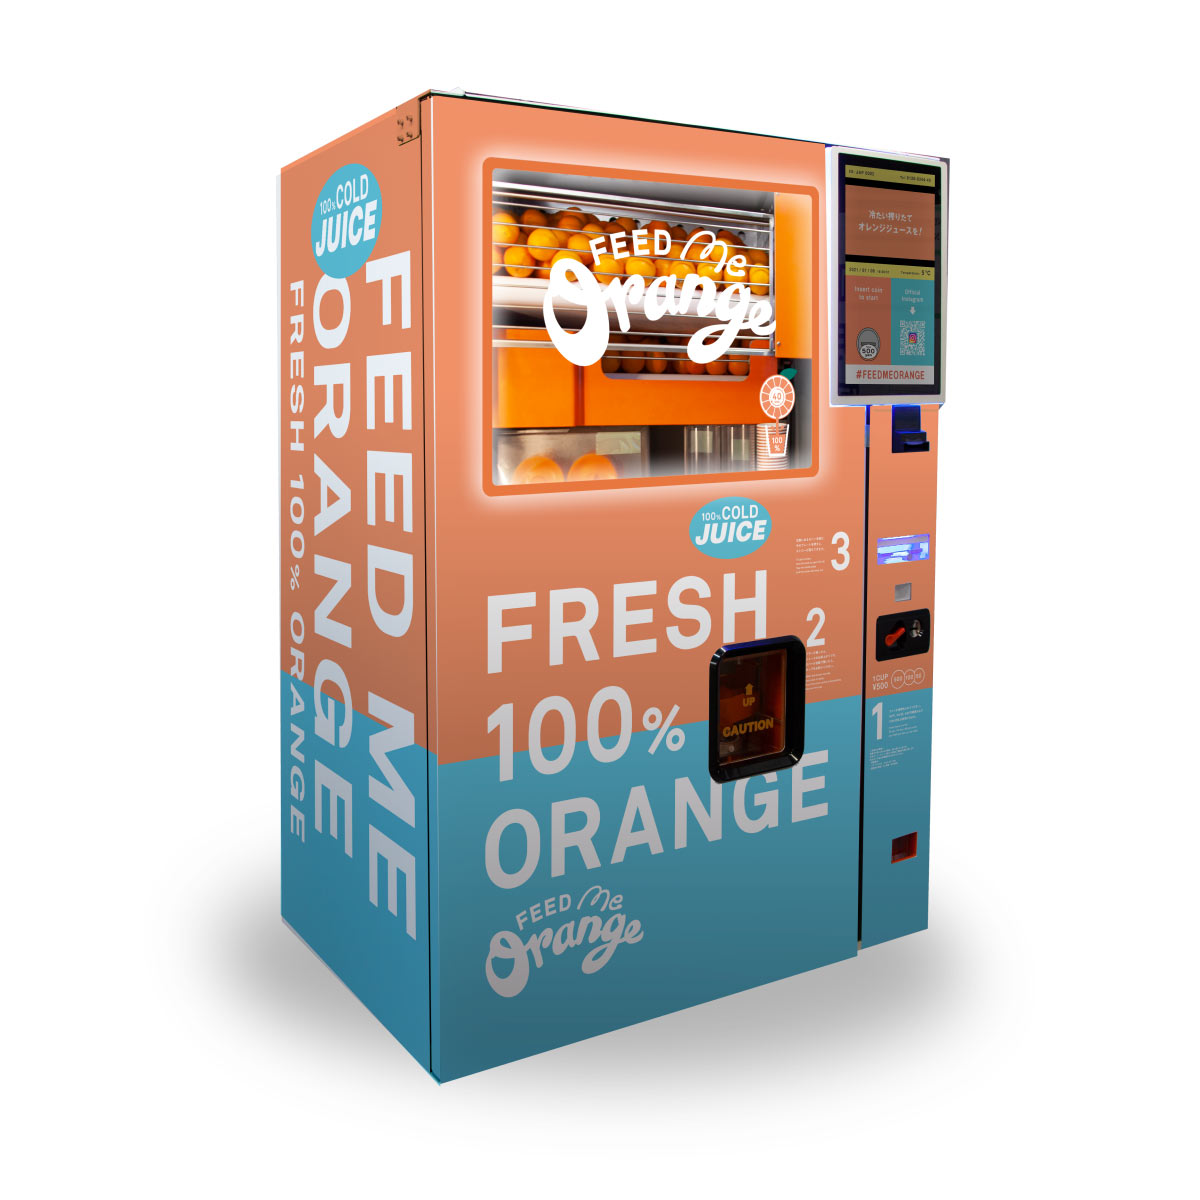 可愛らしくてPOPなデザインのマシンがオレンジをプレスする様子を見られるのも魅力